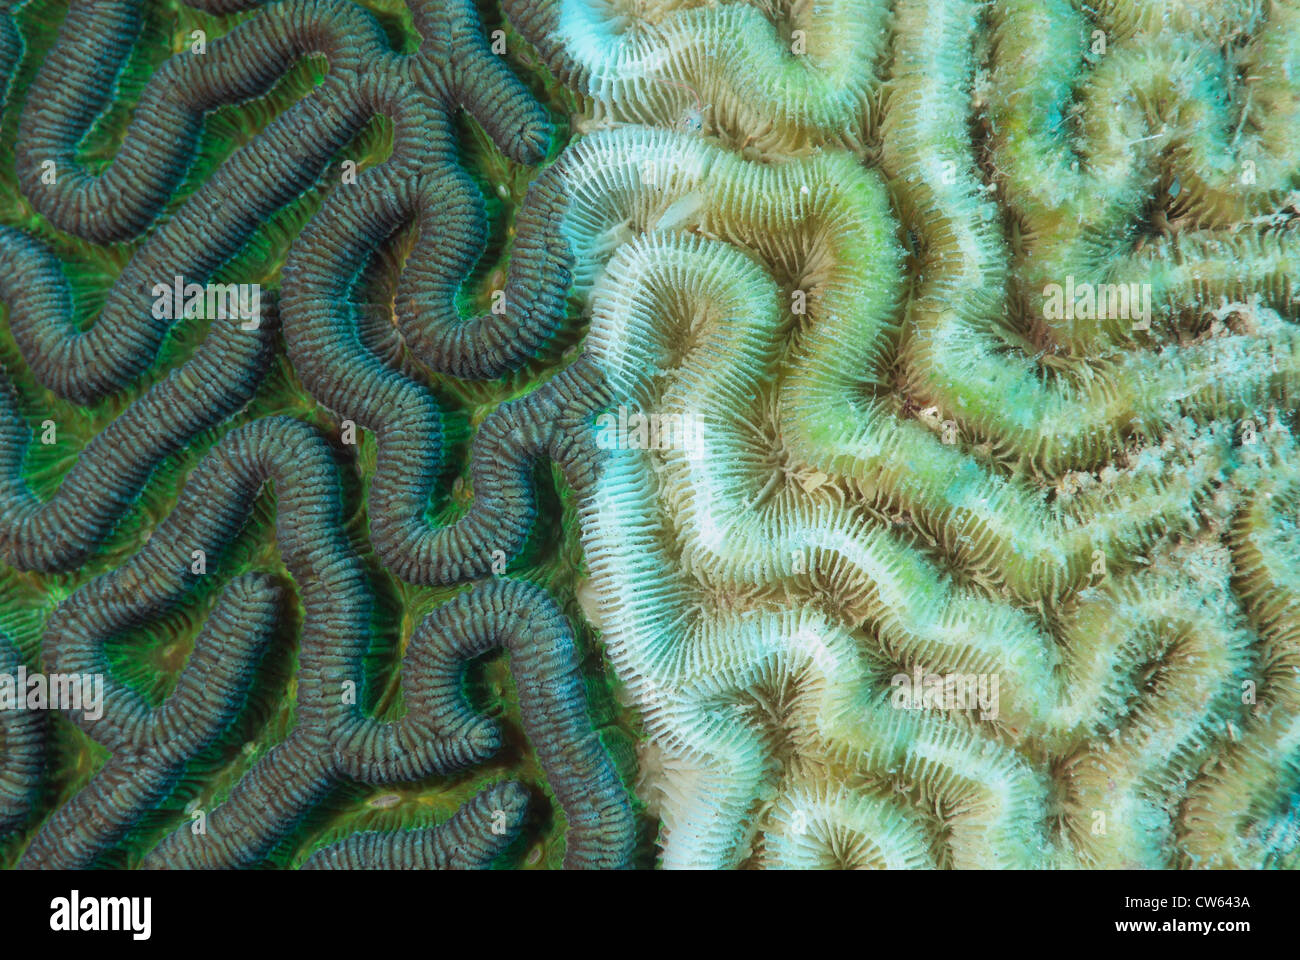 Hirnkoralle Diploria SP., mit der weißen Syndrom Krankheit im Barrier Reef in Belize, Mittelamerika, Karibik Stockfoto